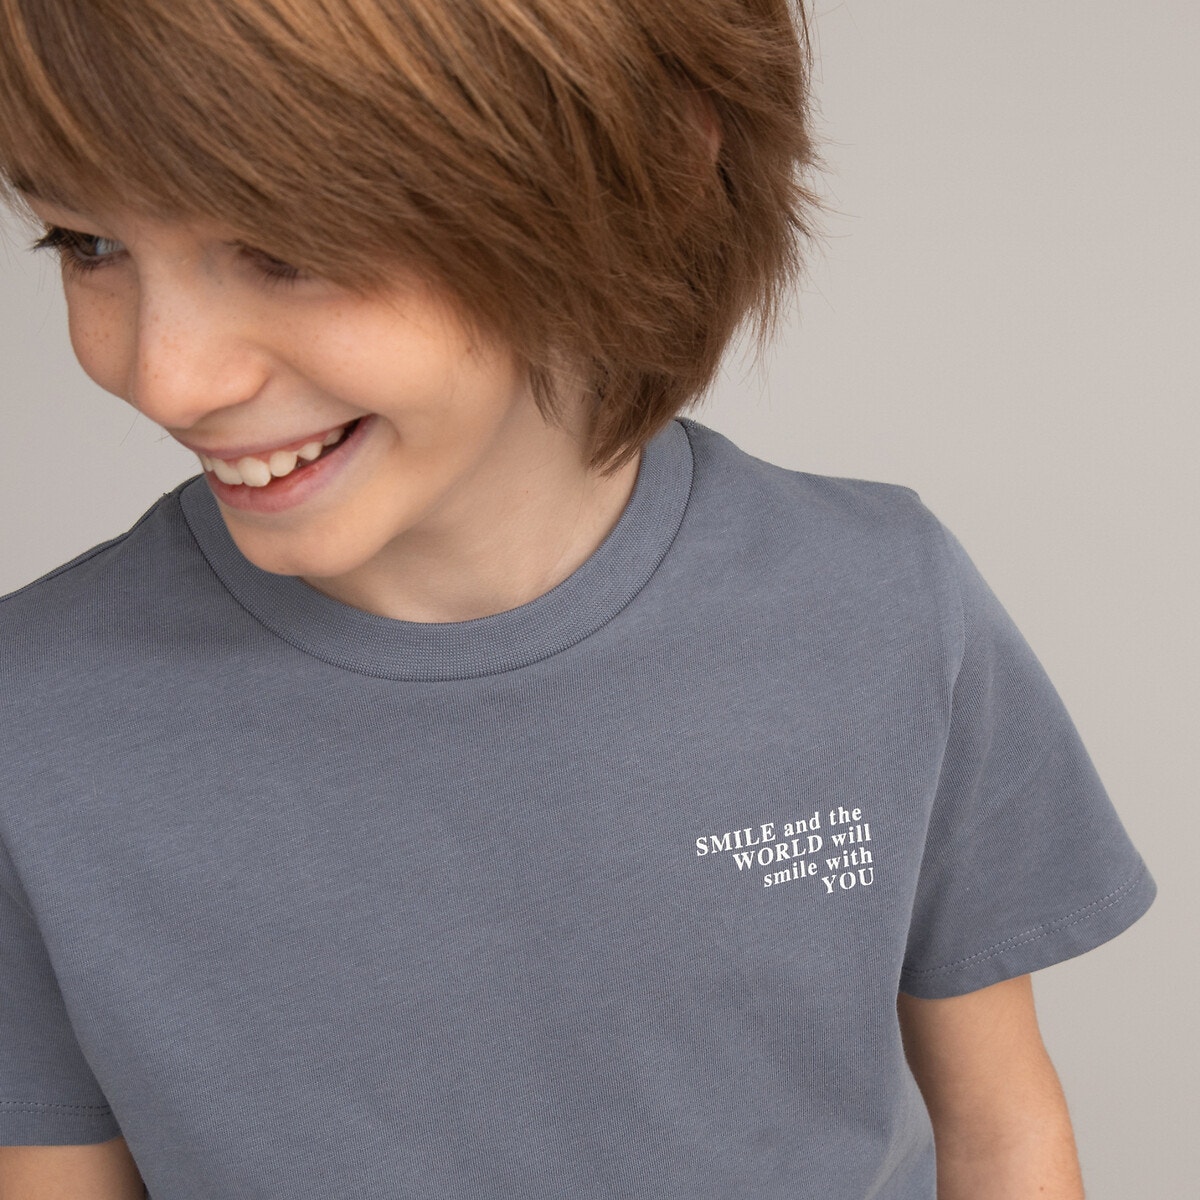 Μόδα > Παιδικά > Αγόρι > T-shirt, πόλο > Κοντά μανίκια Σετ 3 T-shirt με μήνυμα στο στήθος